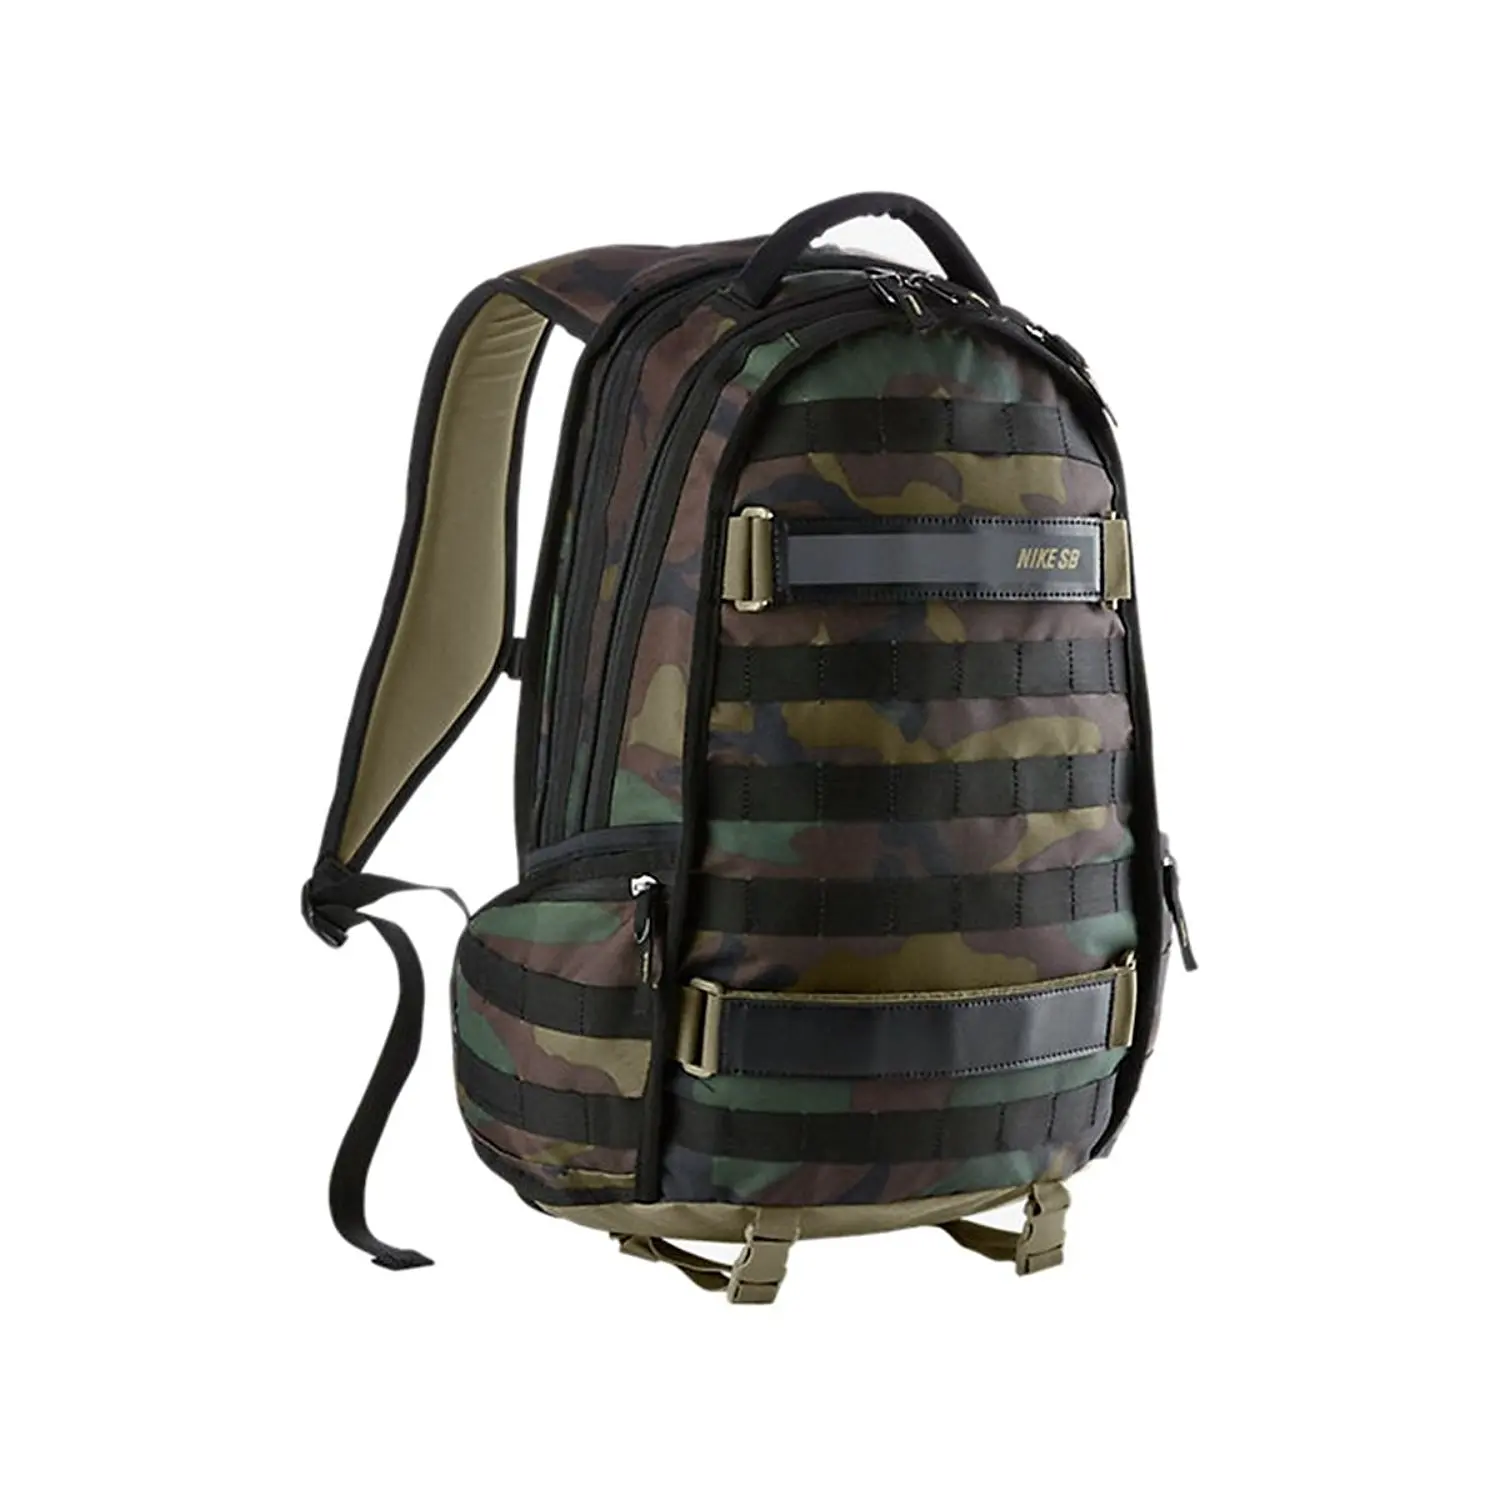 nike sb backpack 2016